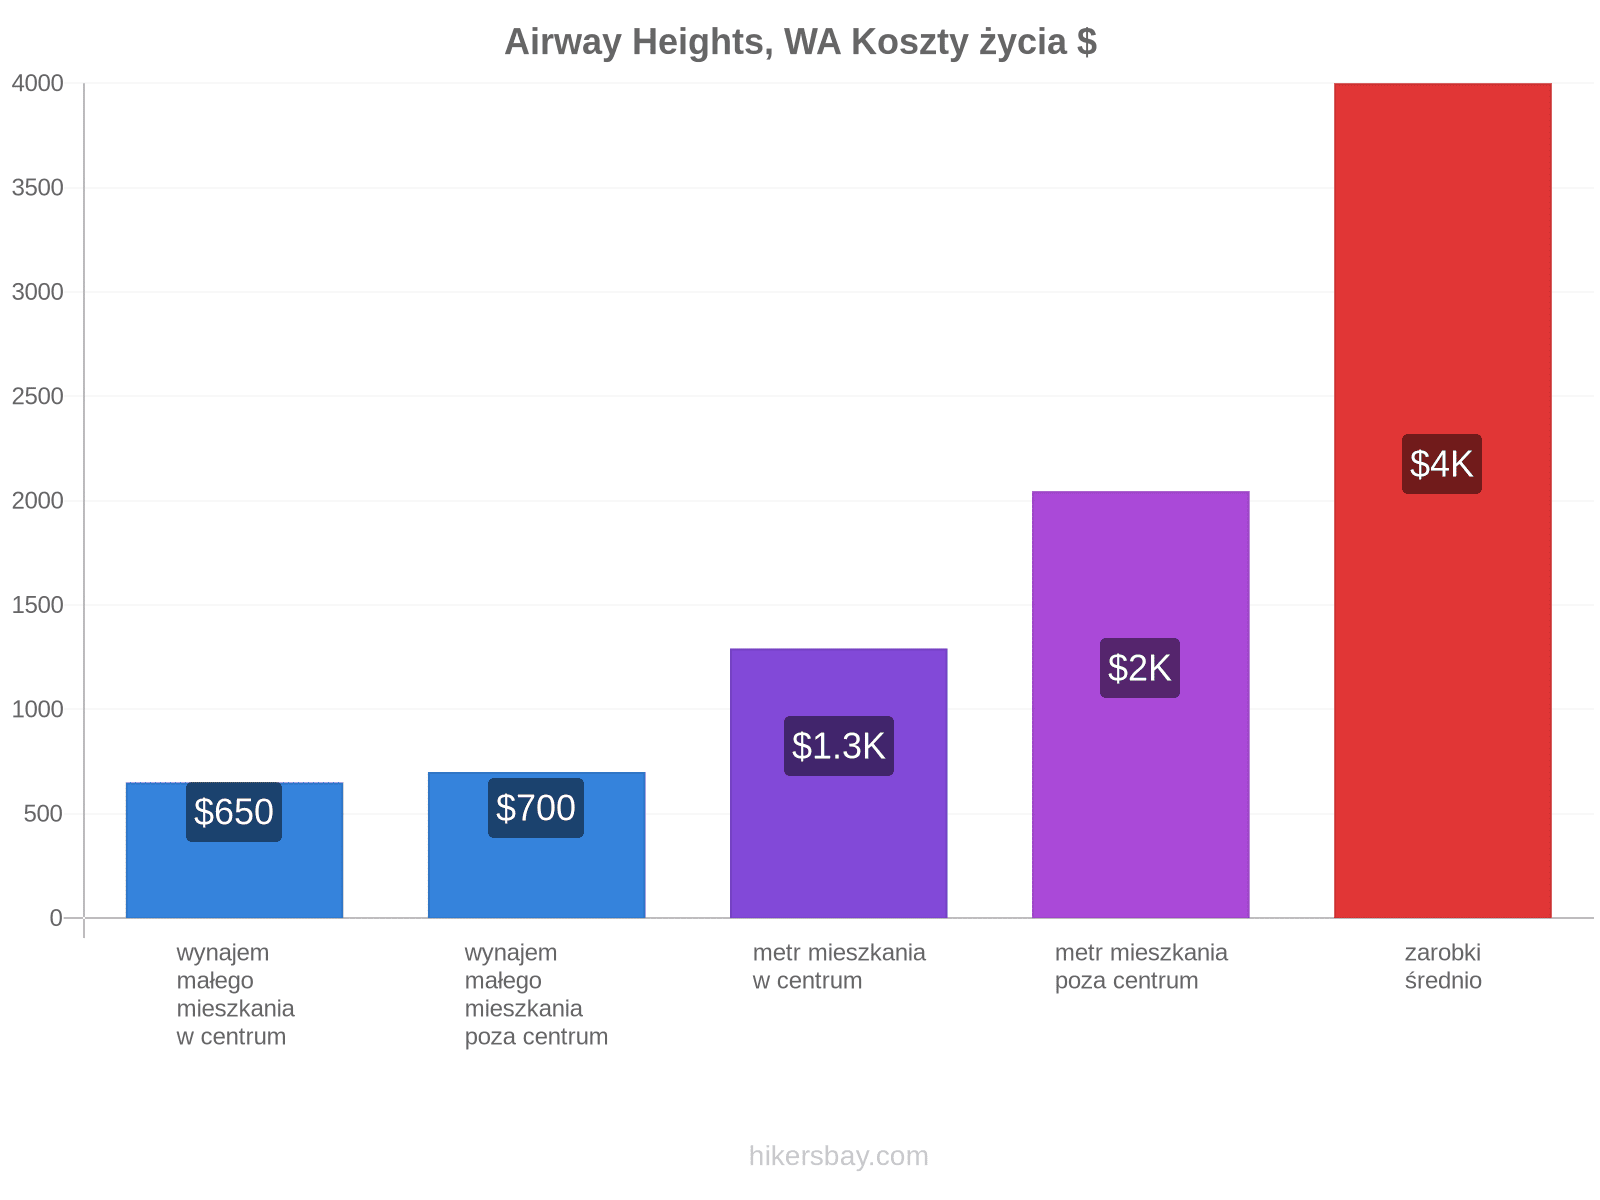 Airway Heights, WA koszty życia hikersbay.com